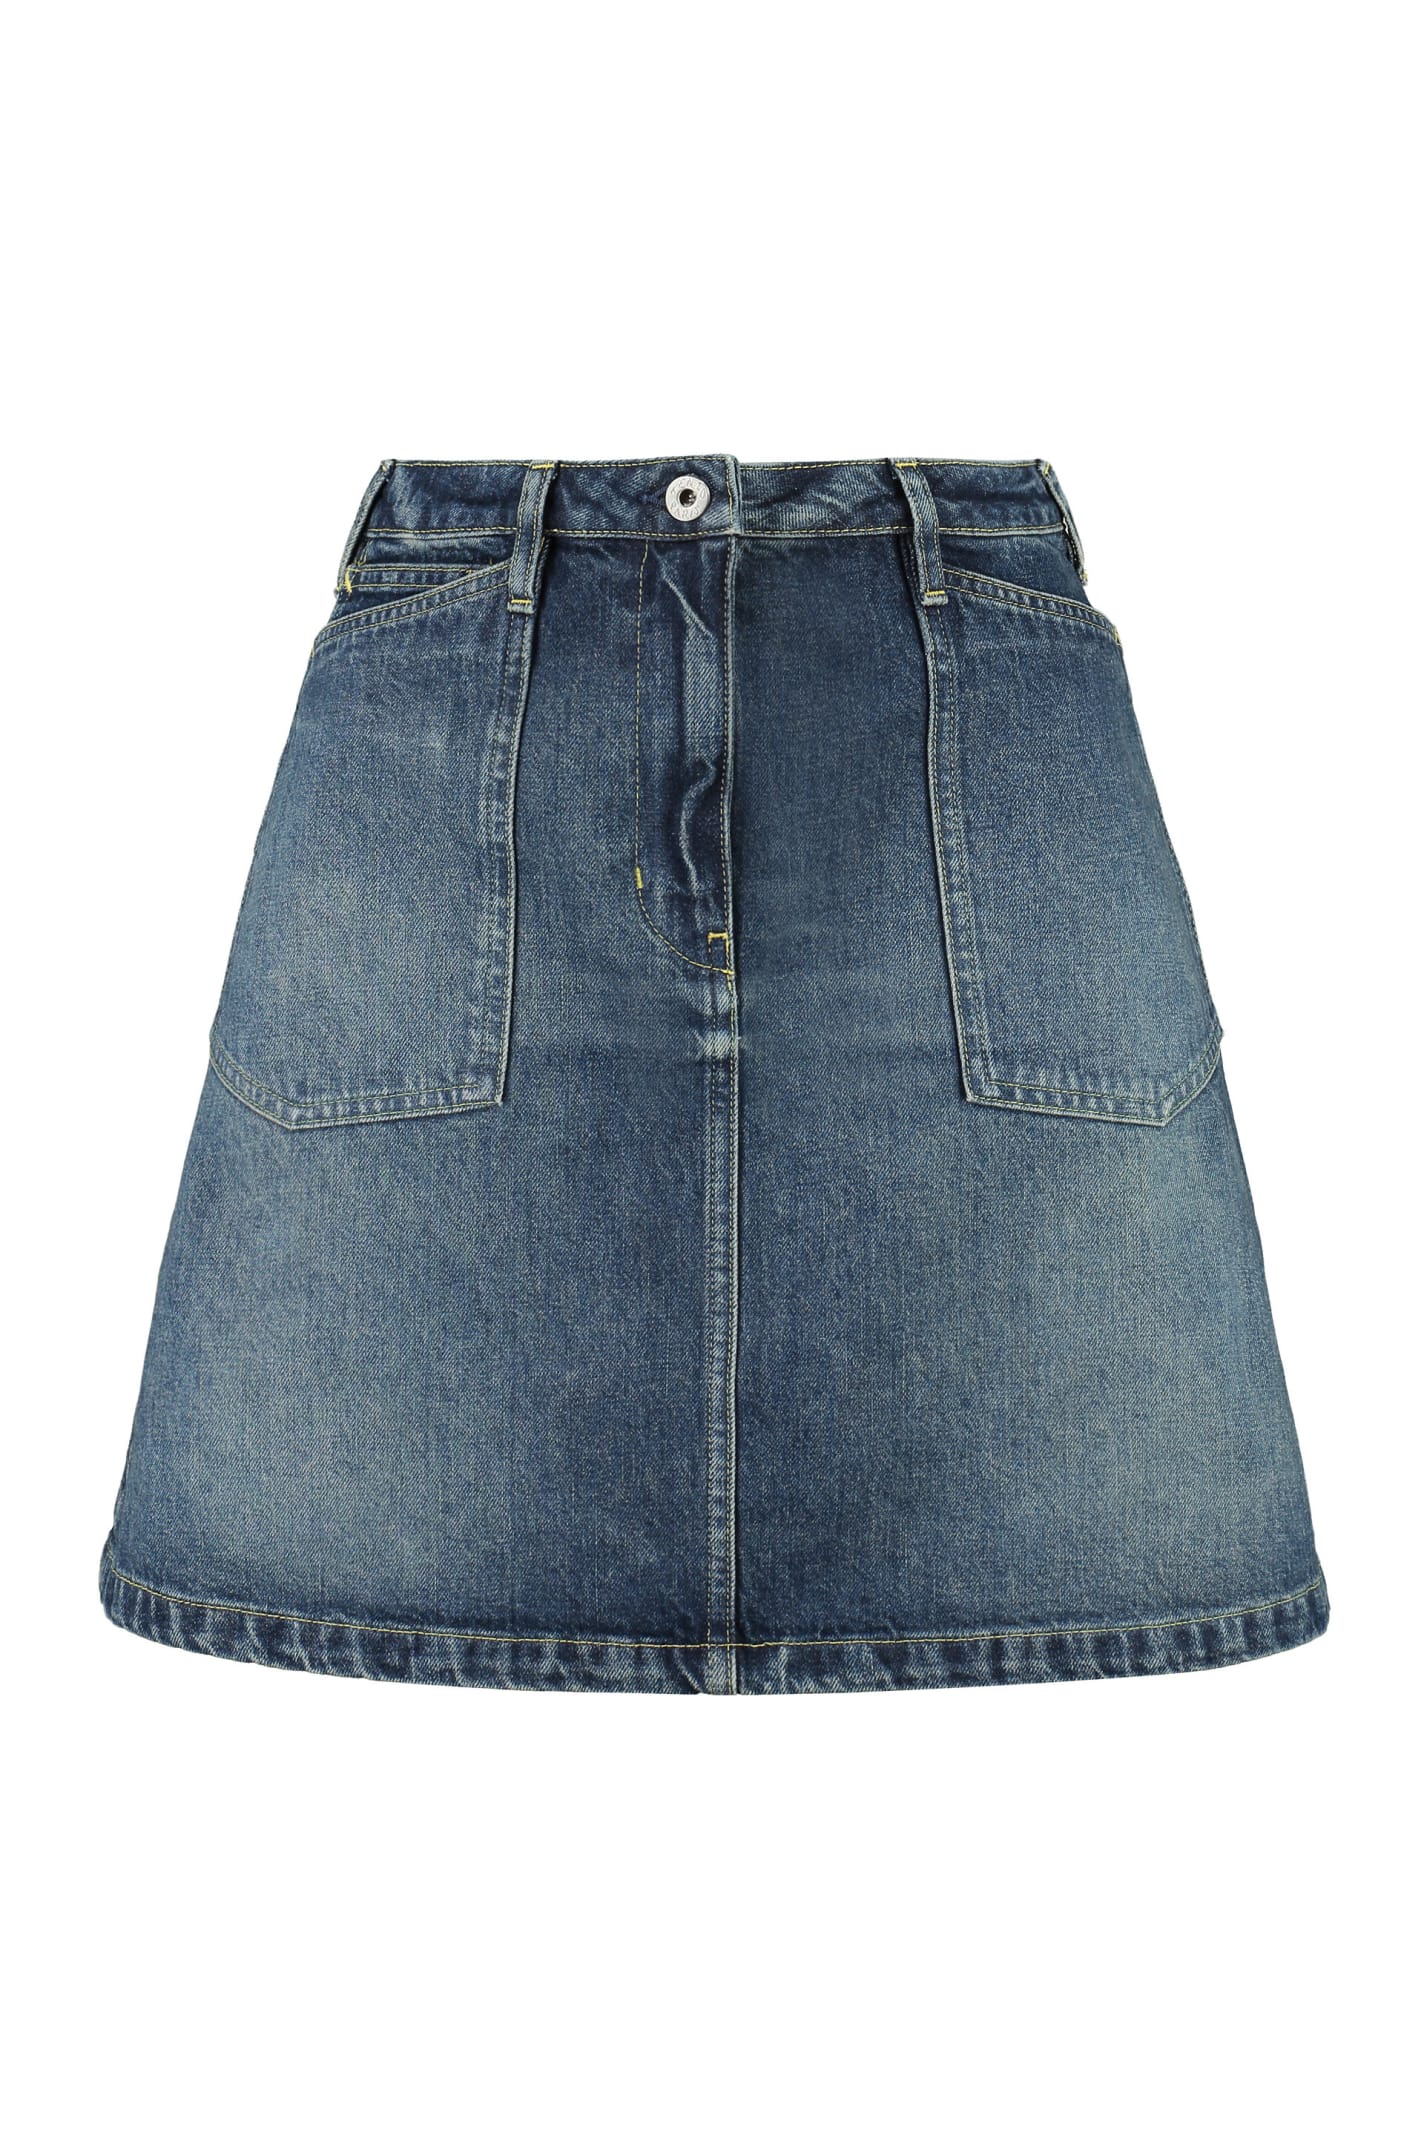 Kenzo Denim Mini Skirt In Blue